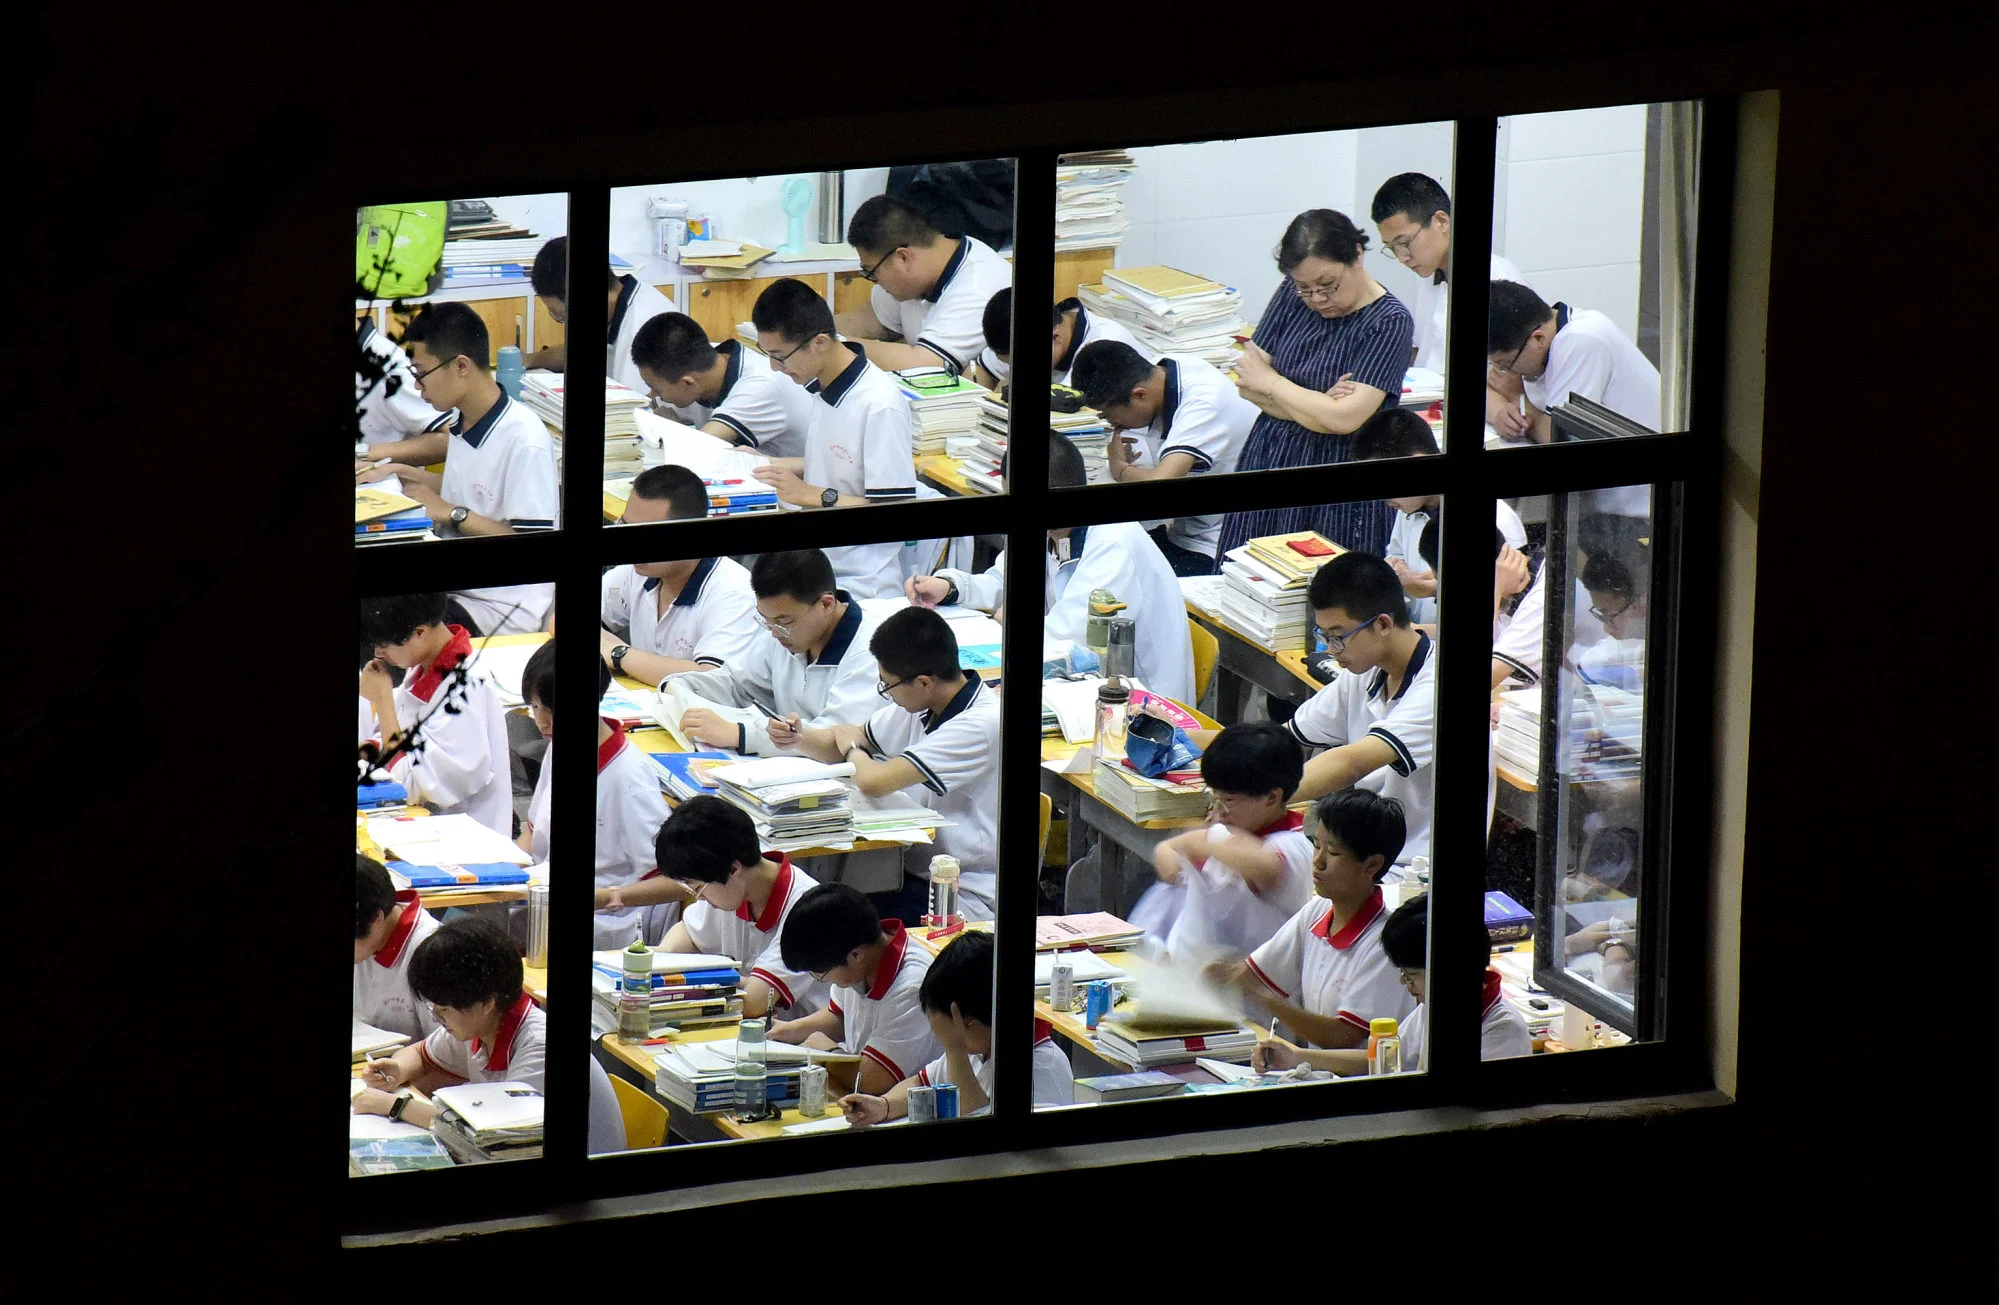 Dưới áp lực cạnh tranh cho suất vào đại học và việc làm, nhiều trường học tại Trung Quốc đã đề ra những quy định nghiêm khắc cho học sinh nhằm cải thiện sự tập trung và khả năng tiếp thu bài học - Ảnh: Getty Images